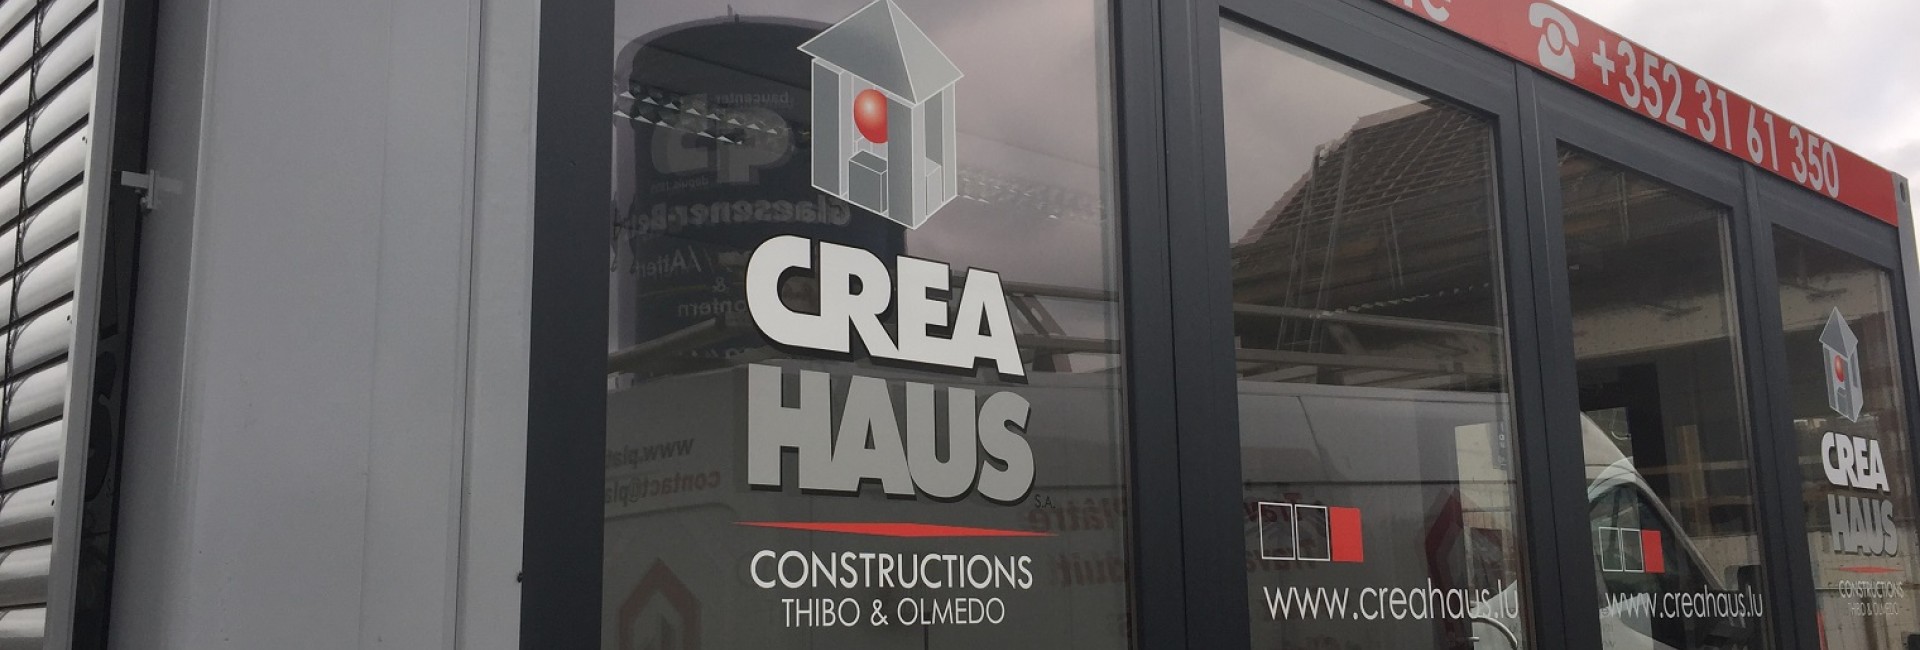 Crea Haus Verkaufscontainer